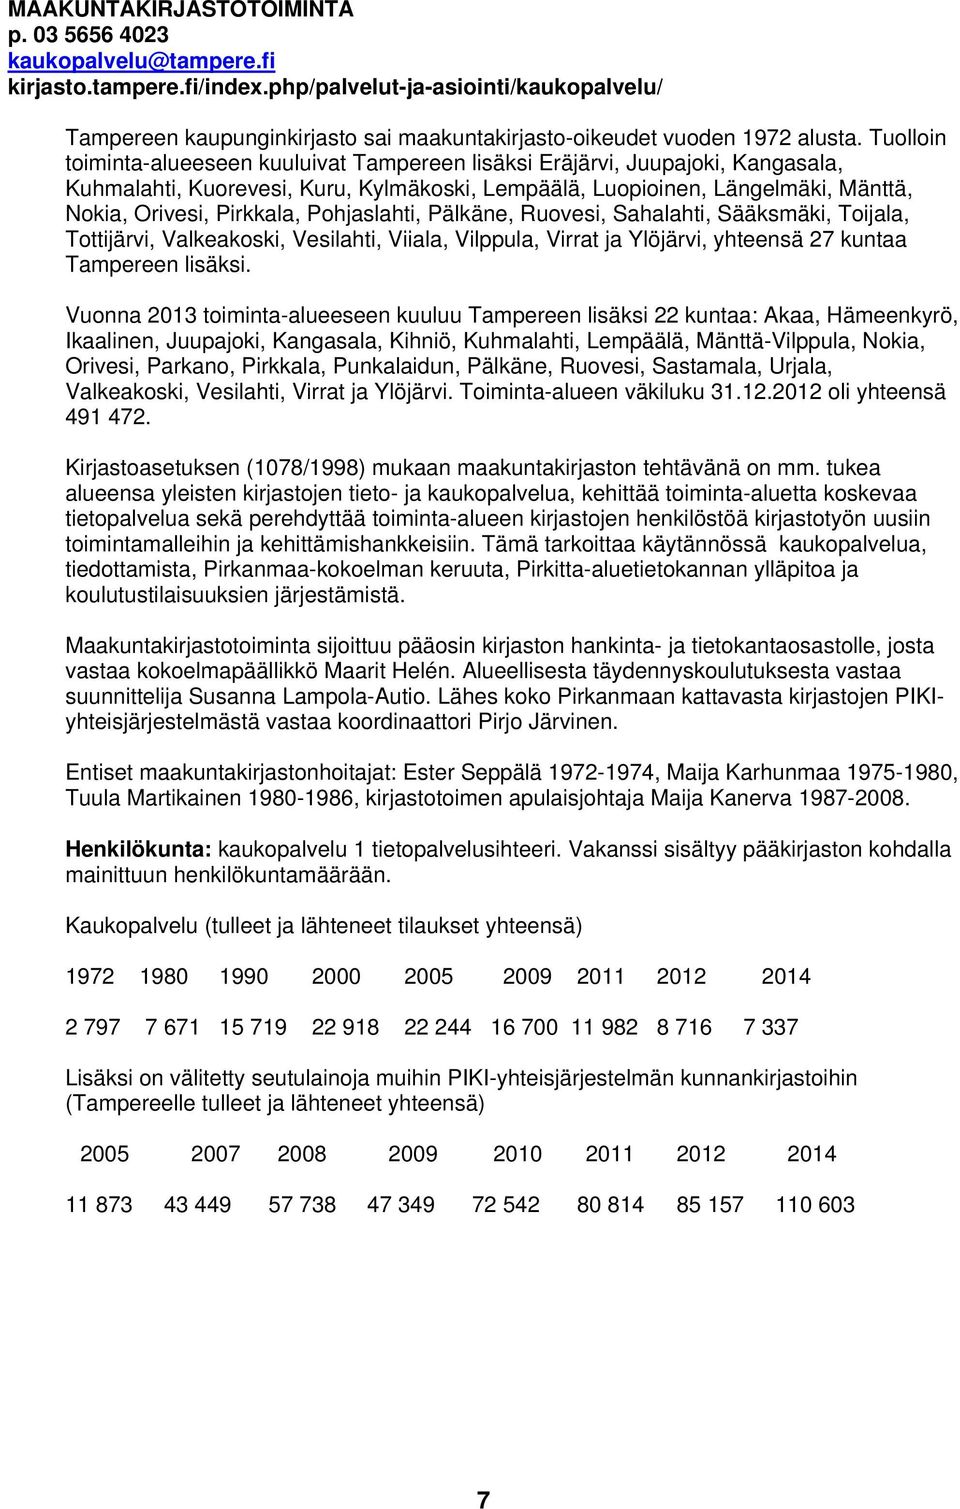 Tuolloin toiminta-alueeseen kuuluivat Tampereen lisäksi Eräjärvi, Juupajoki, Kangasala, Kuhmalahti, Kuorevesi, Kuru, Kylmäkoski, Lempäälä, Luopioinen, Längelmäki, Mänttä, Nokia, Orivesi, Pirkkala,